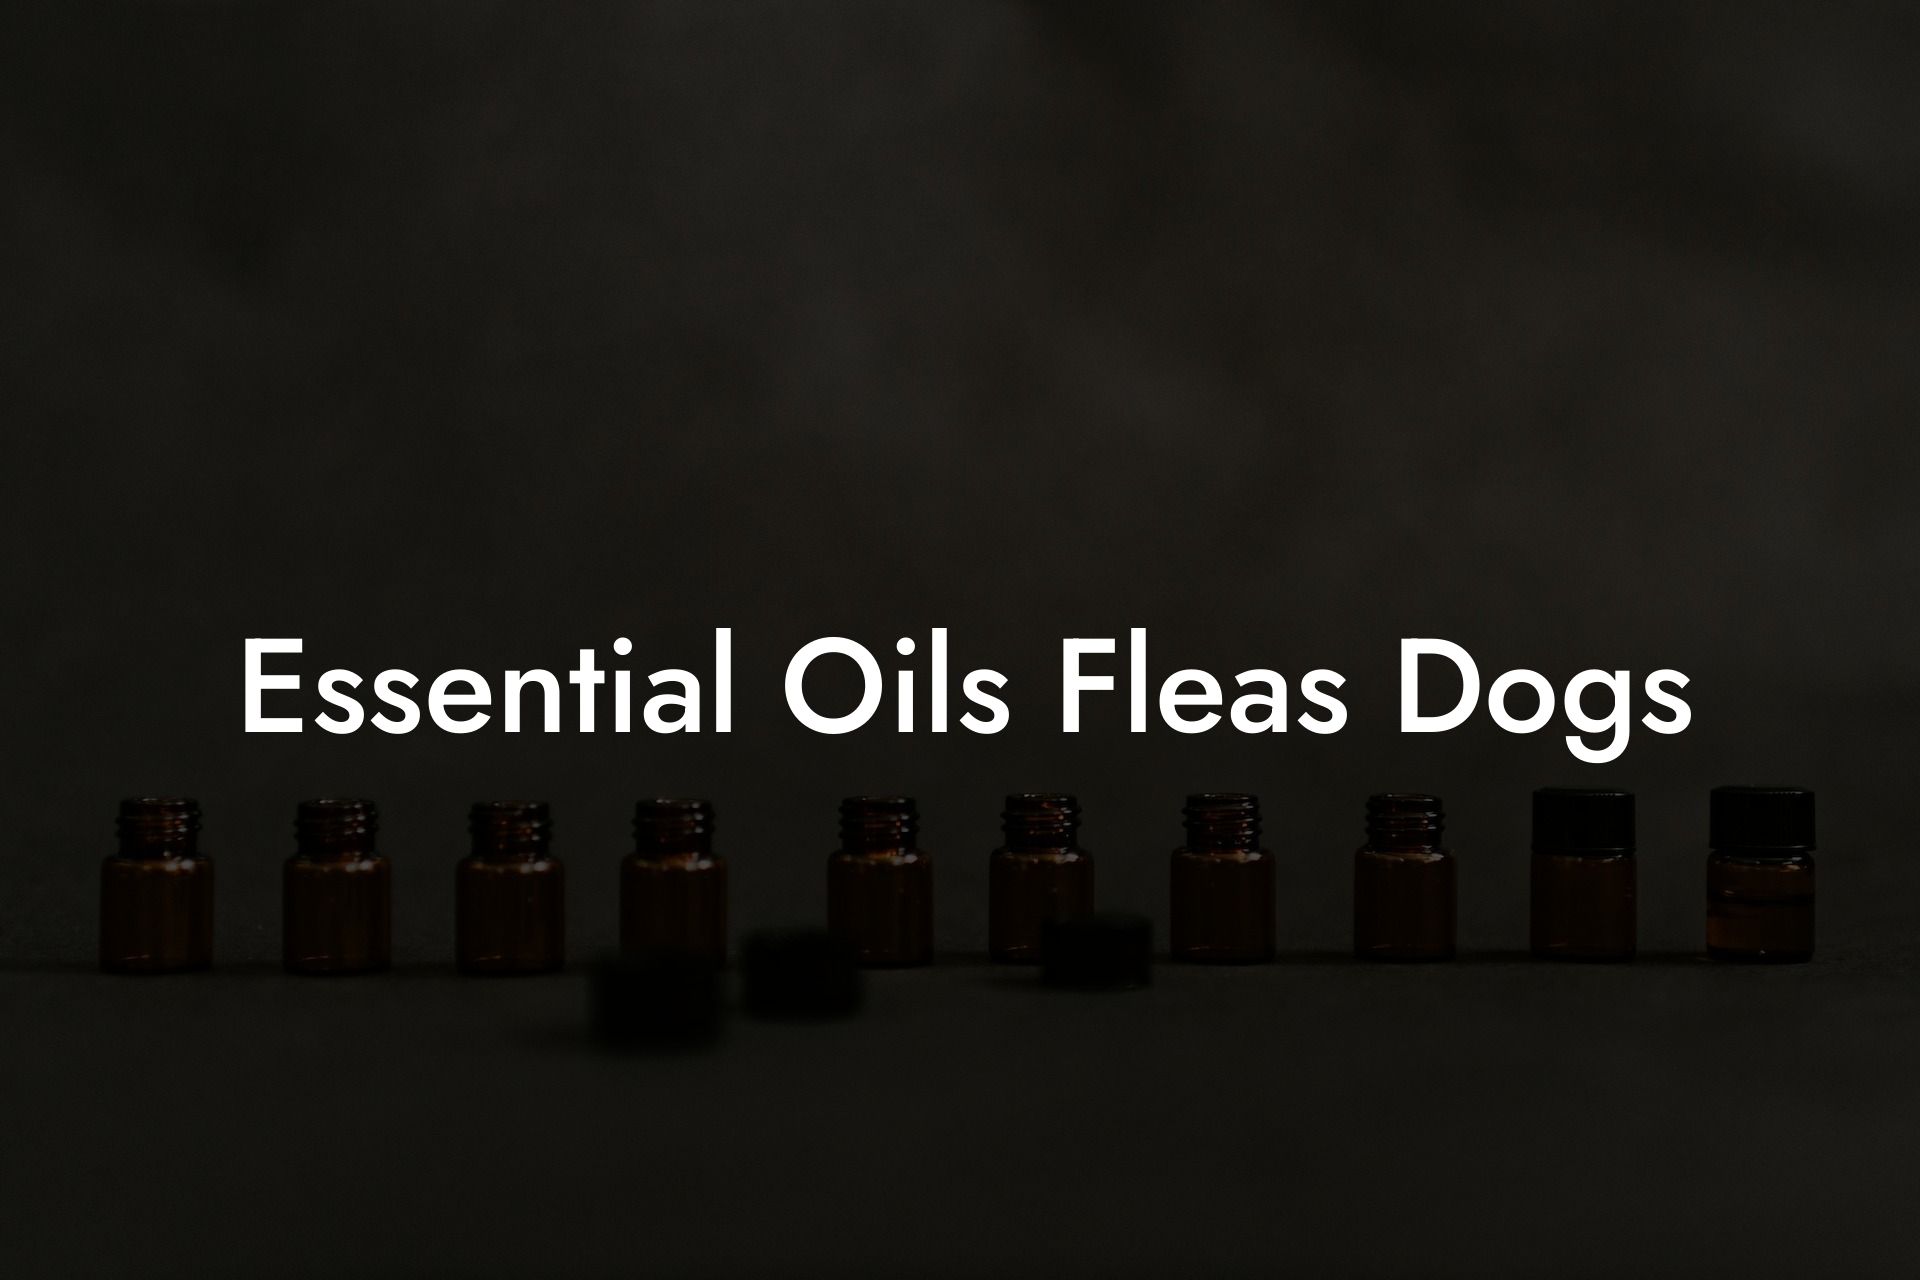 Essential Oils Fleas Dogs